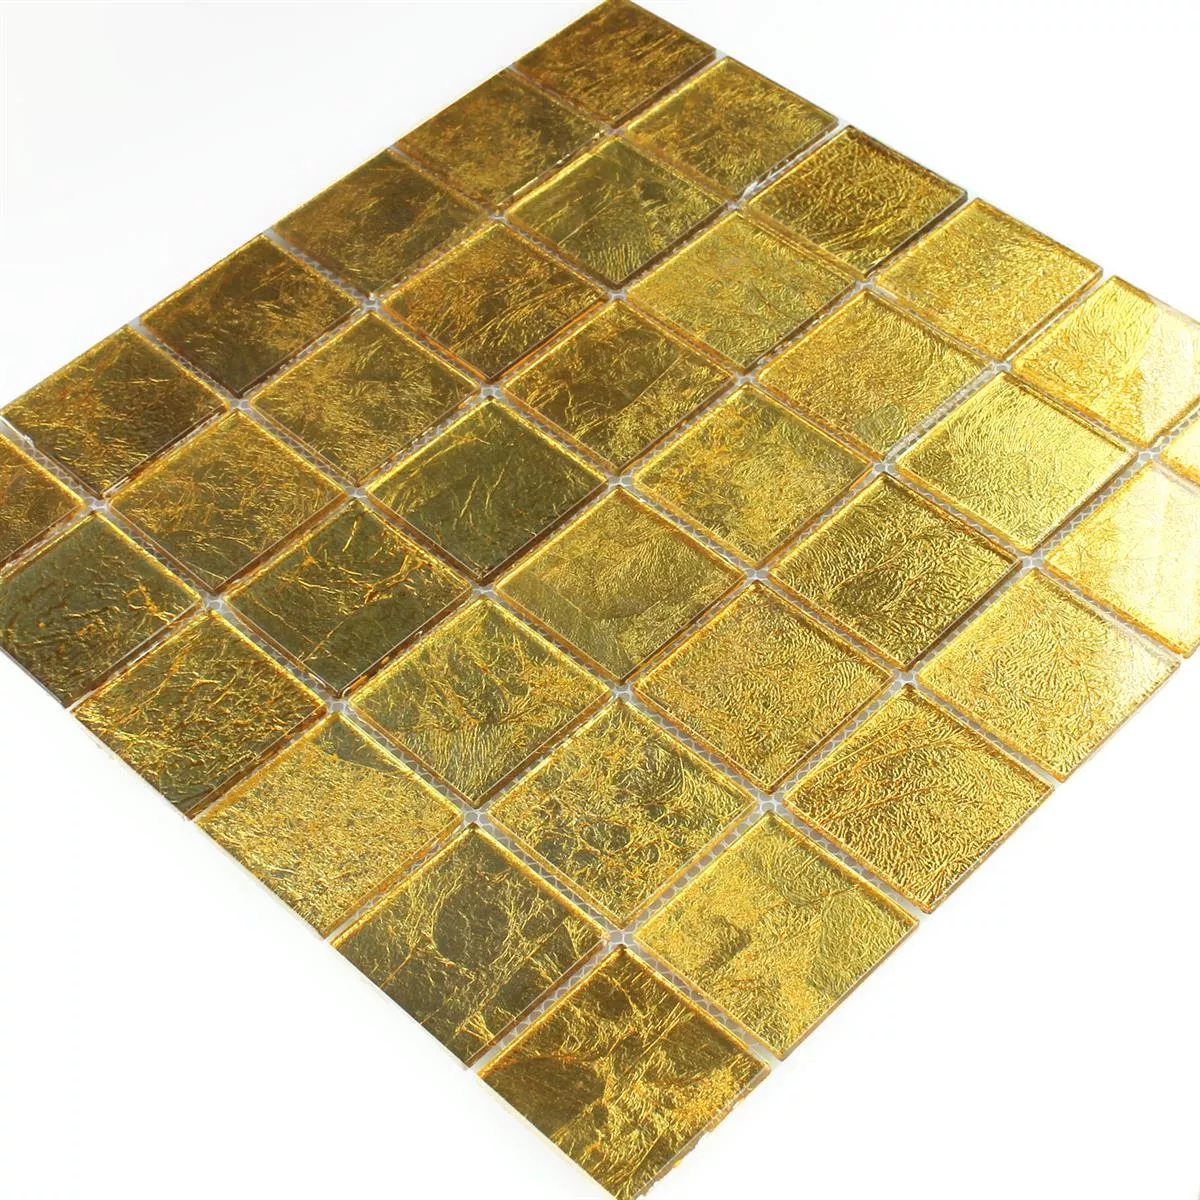 Mosaic Tiles Glass Effect Gold 48x48x4mm